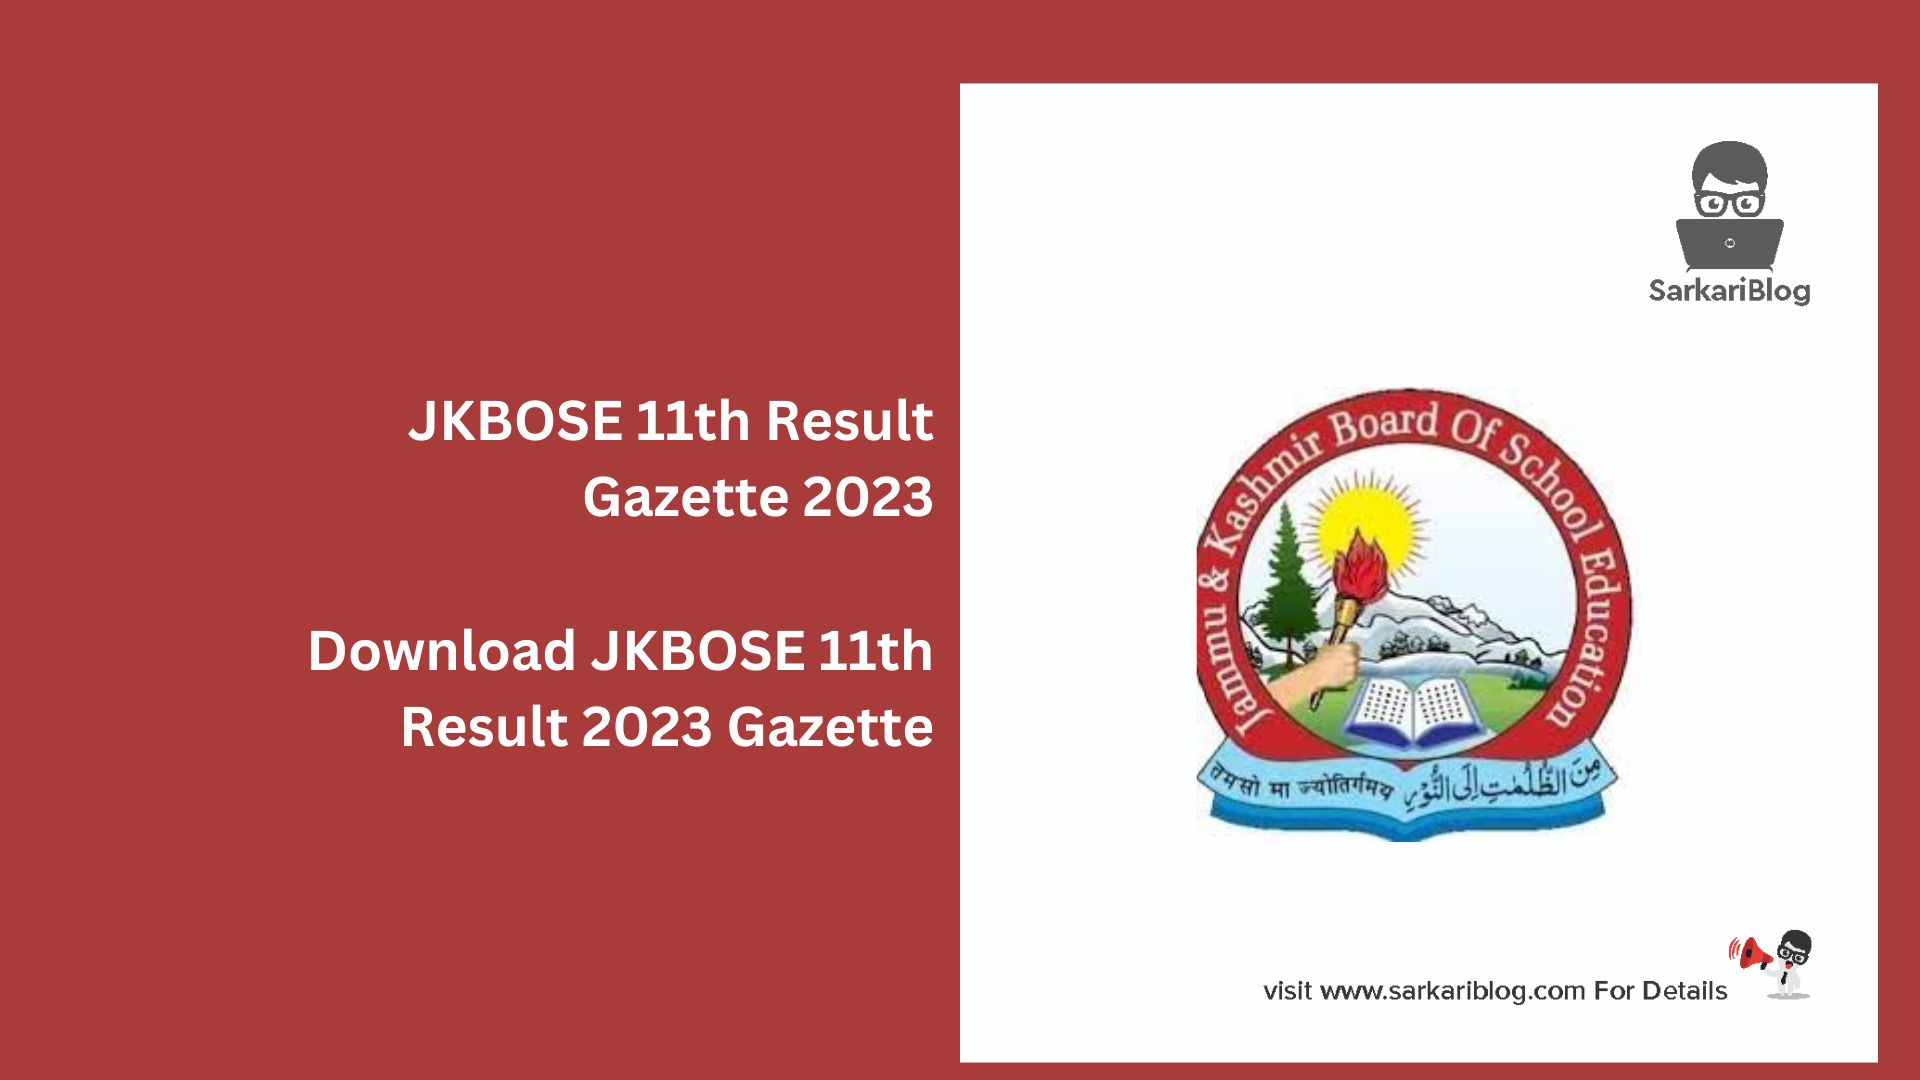 JKBOSE 11th Result Gazette 2023